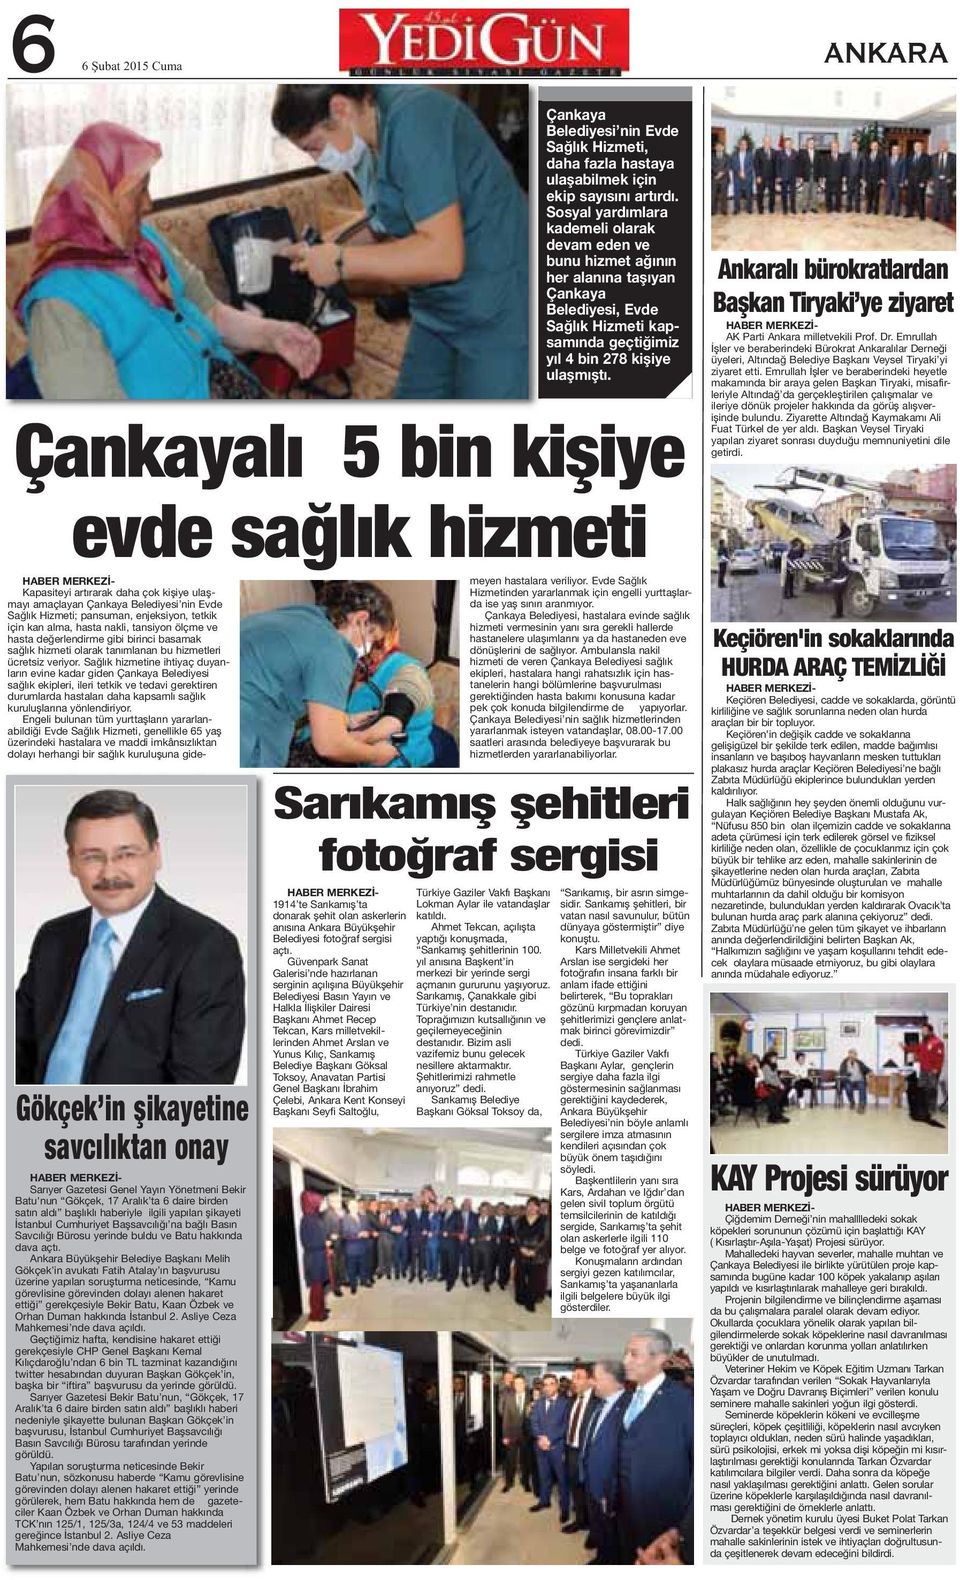 Ankara Büyükşehir Belediye Başkanı Melih Gökçek in avukatı Fatih Atalay ın başvurusu üzerine yapılan soruşturma neticesinde, Kamu görevlisine görevinden dolayı alenen hakaret ettiği gerekçesiyle